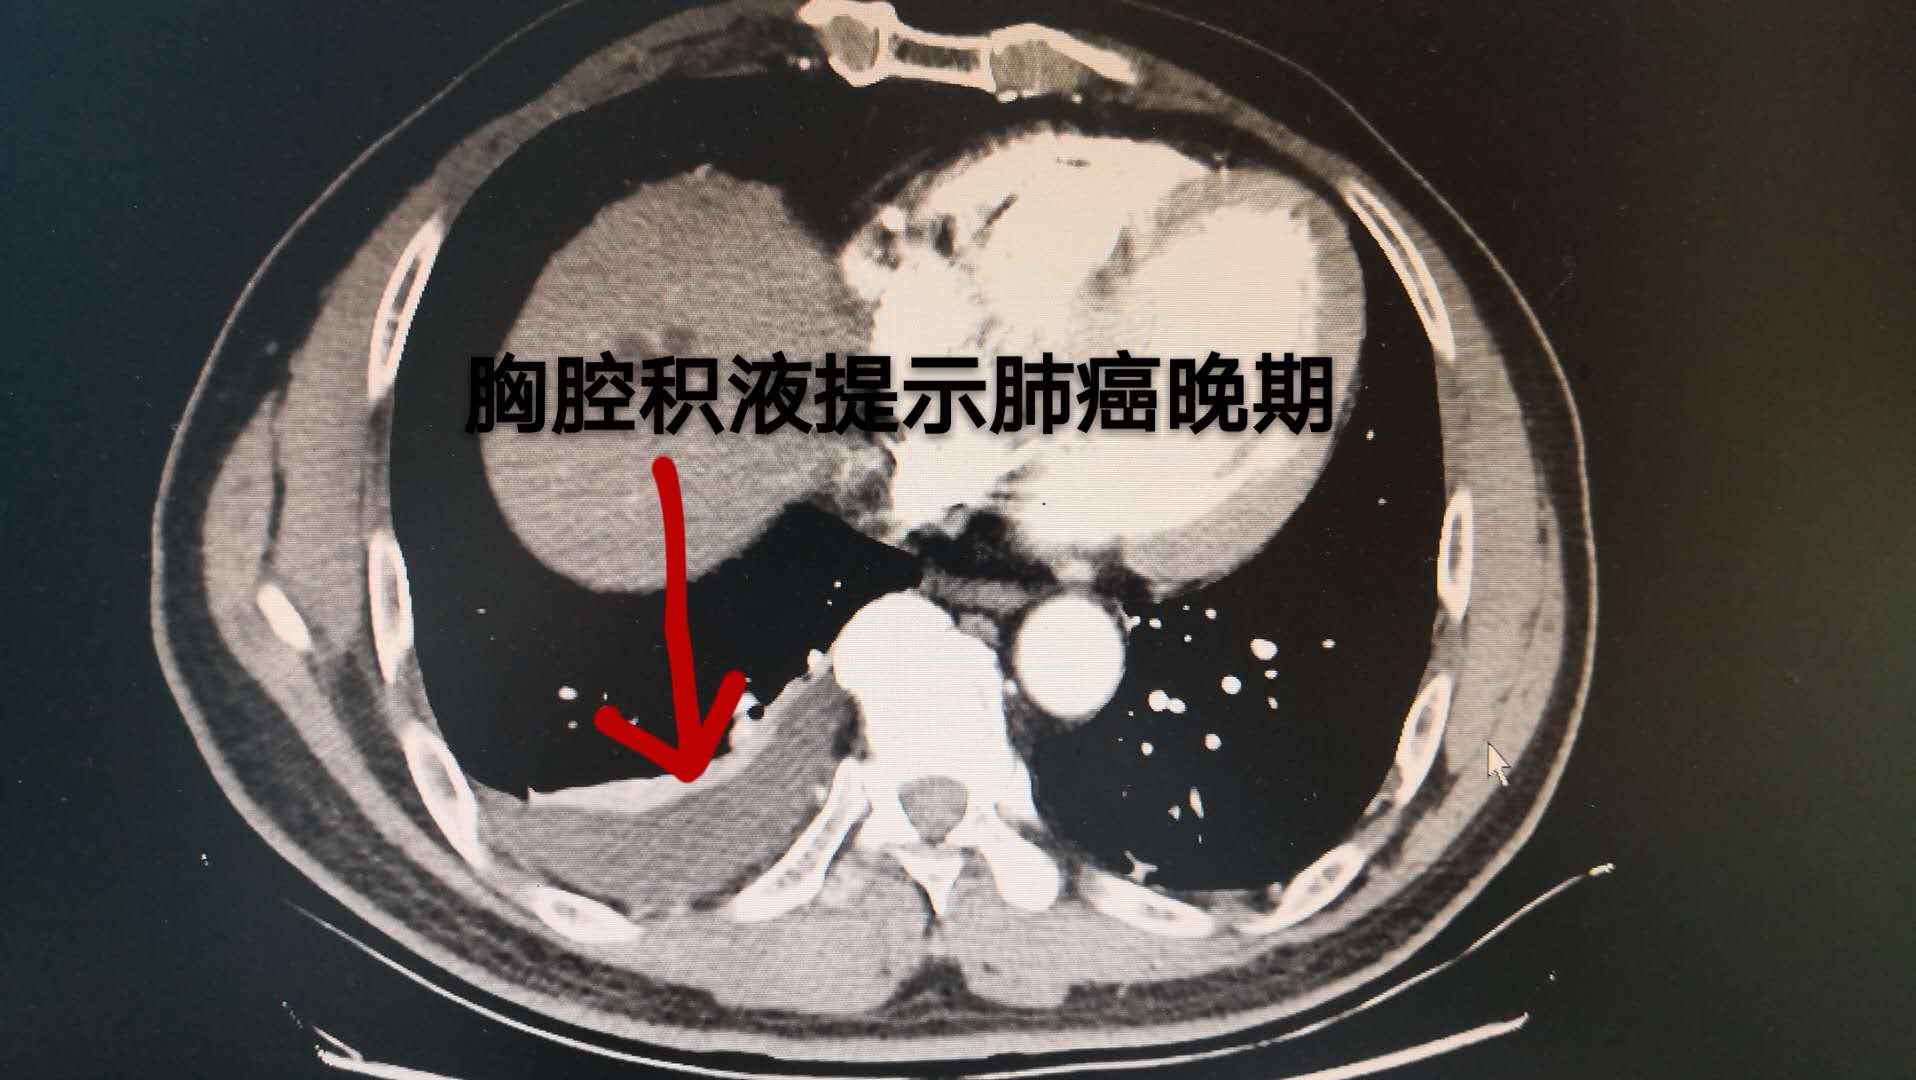 肺癌胸腔积液图片